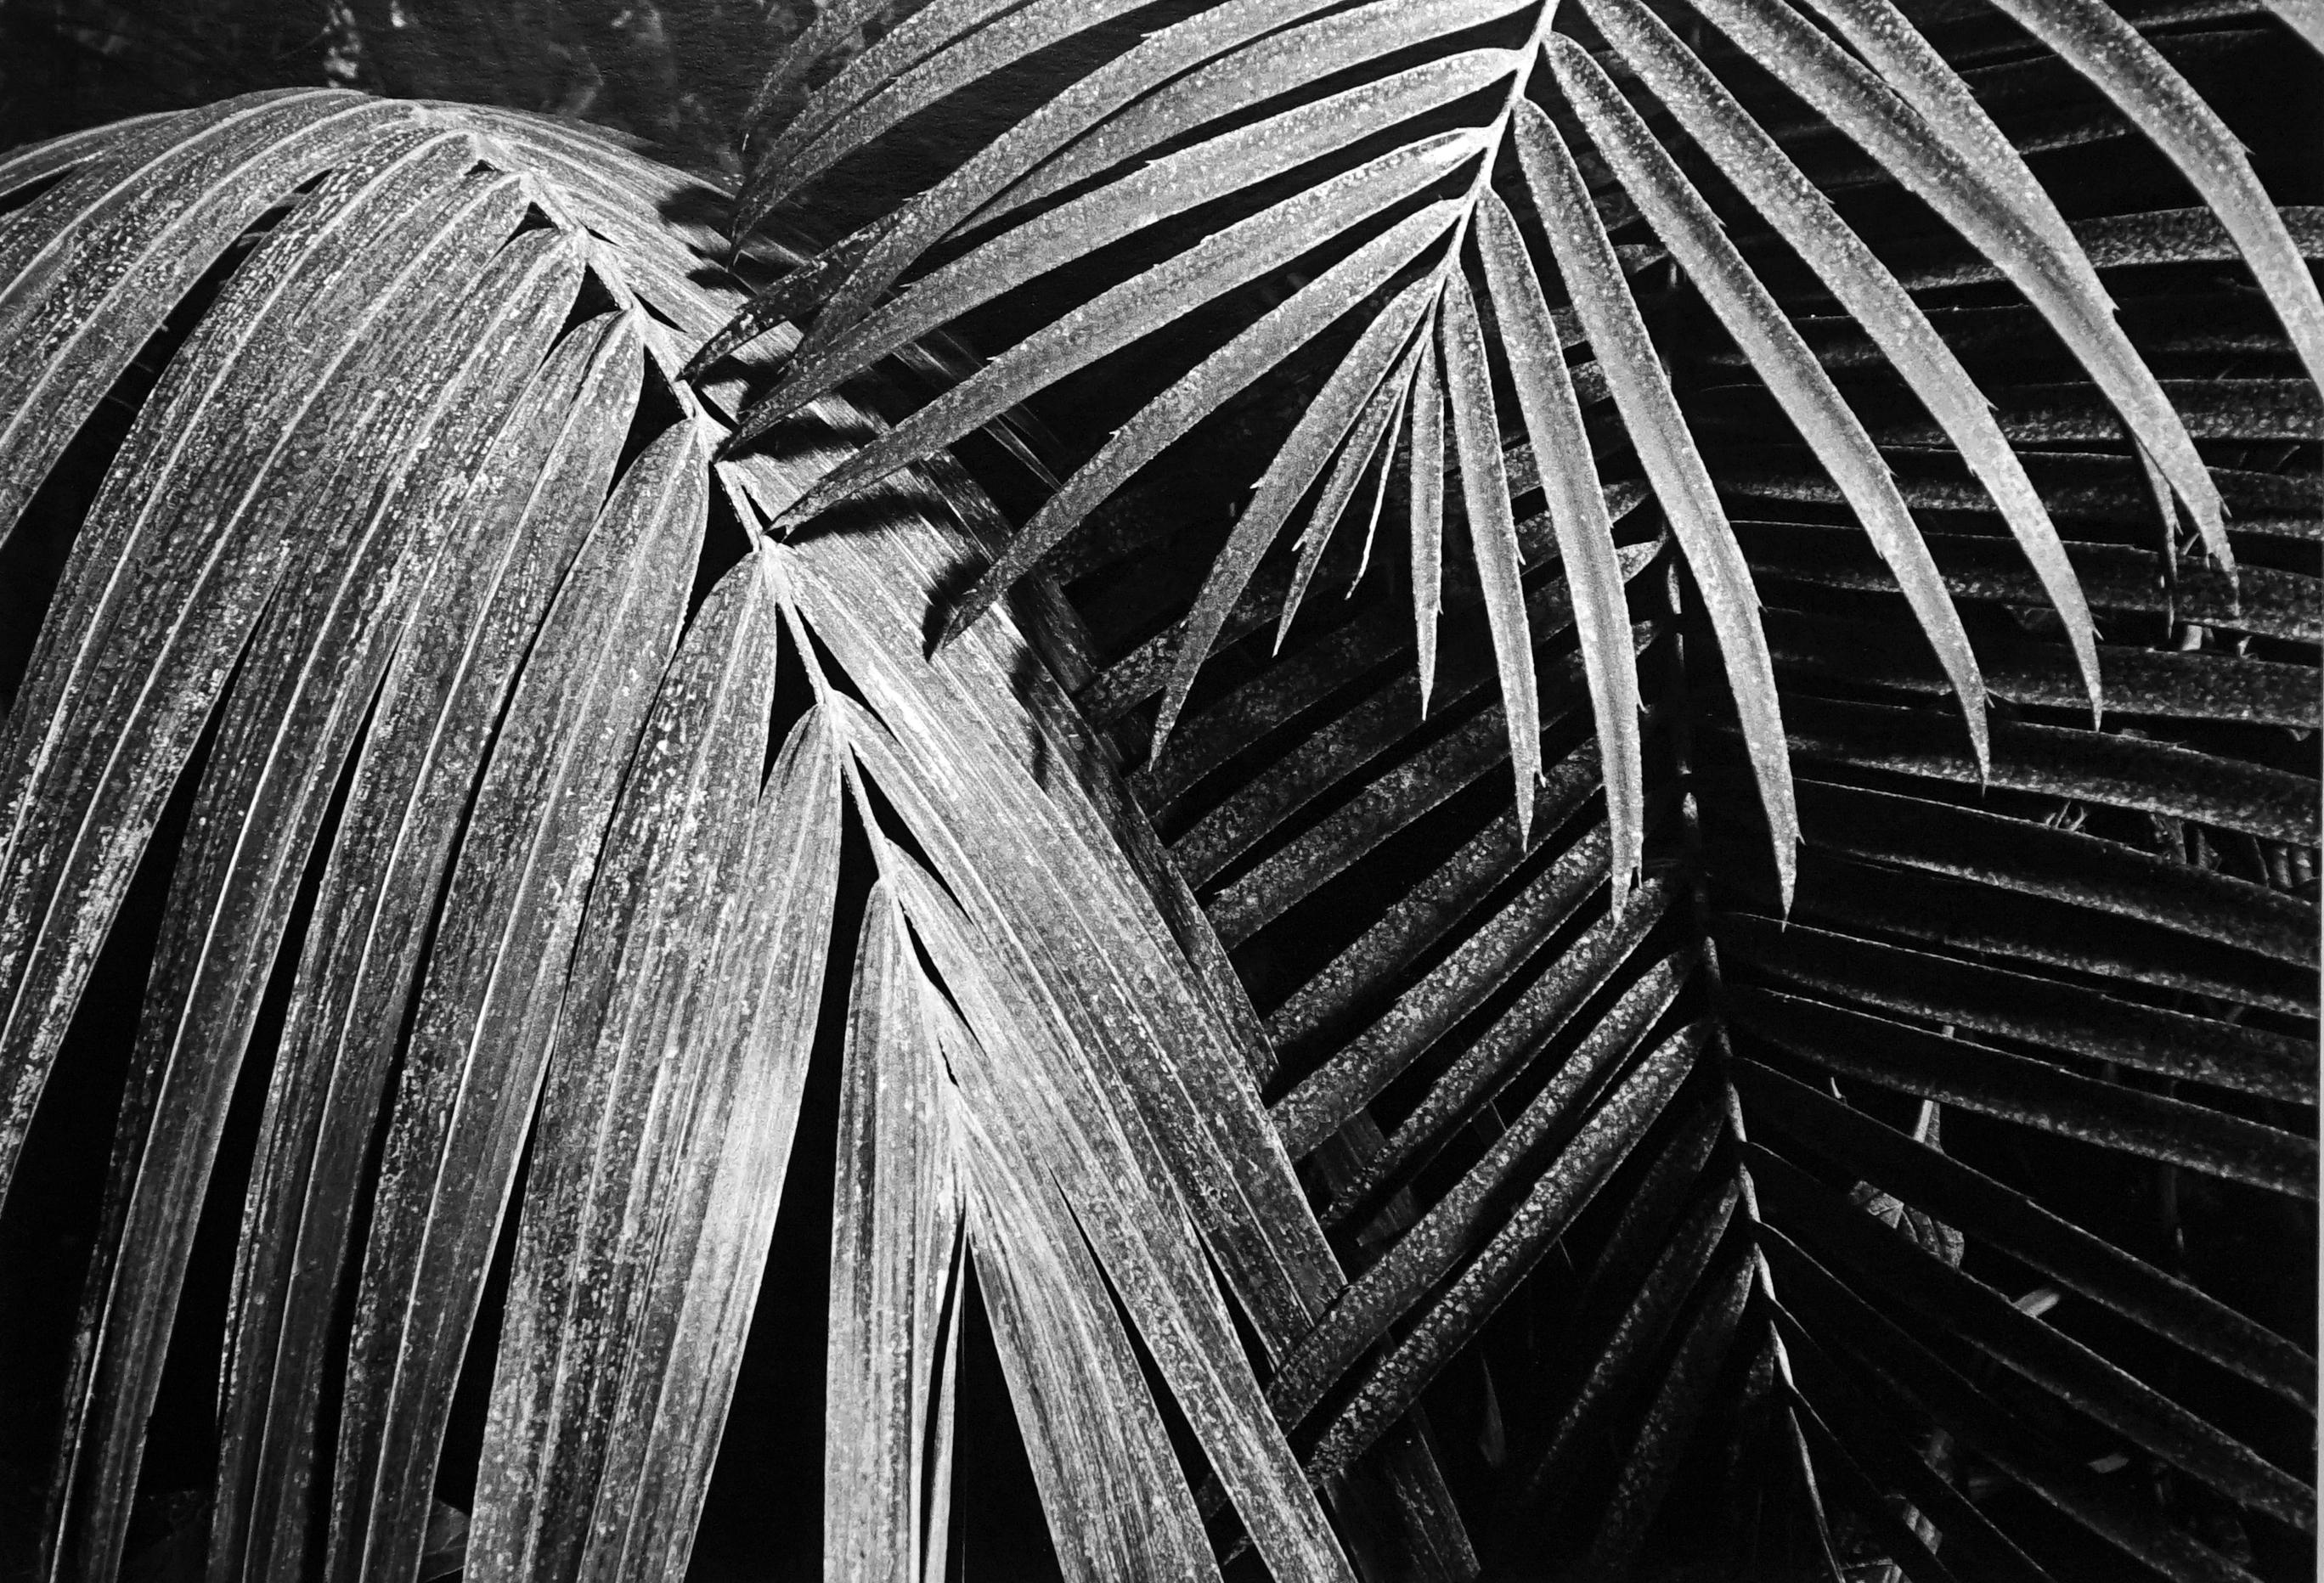 Black and White Photograph Jörg Krichbaum - Jardin - Off-Print # 1 - 1979 - Photographie minimaliste en noir et blanc